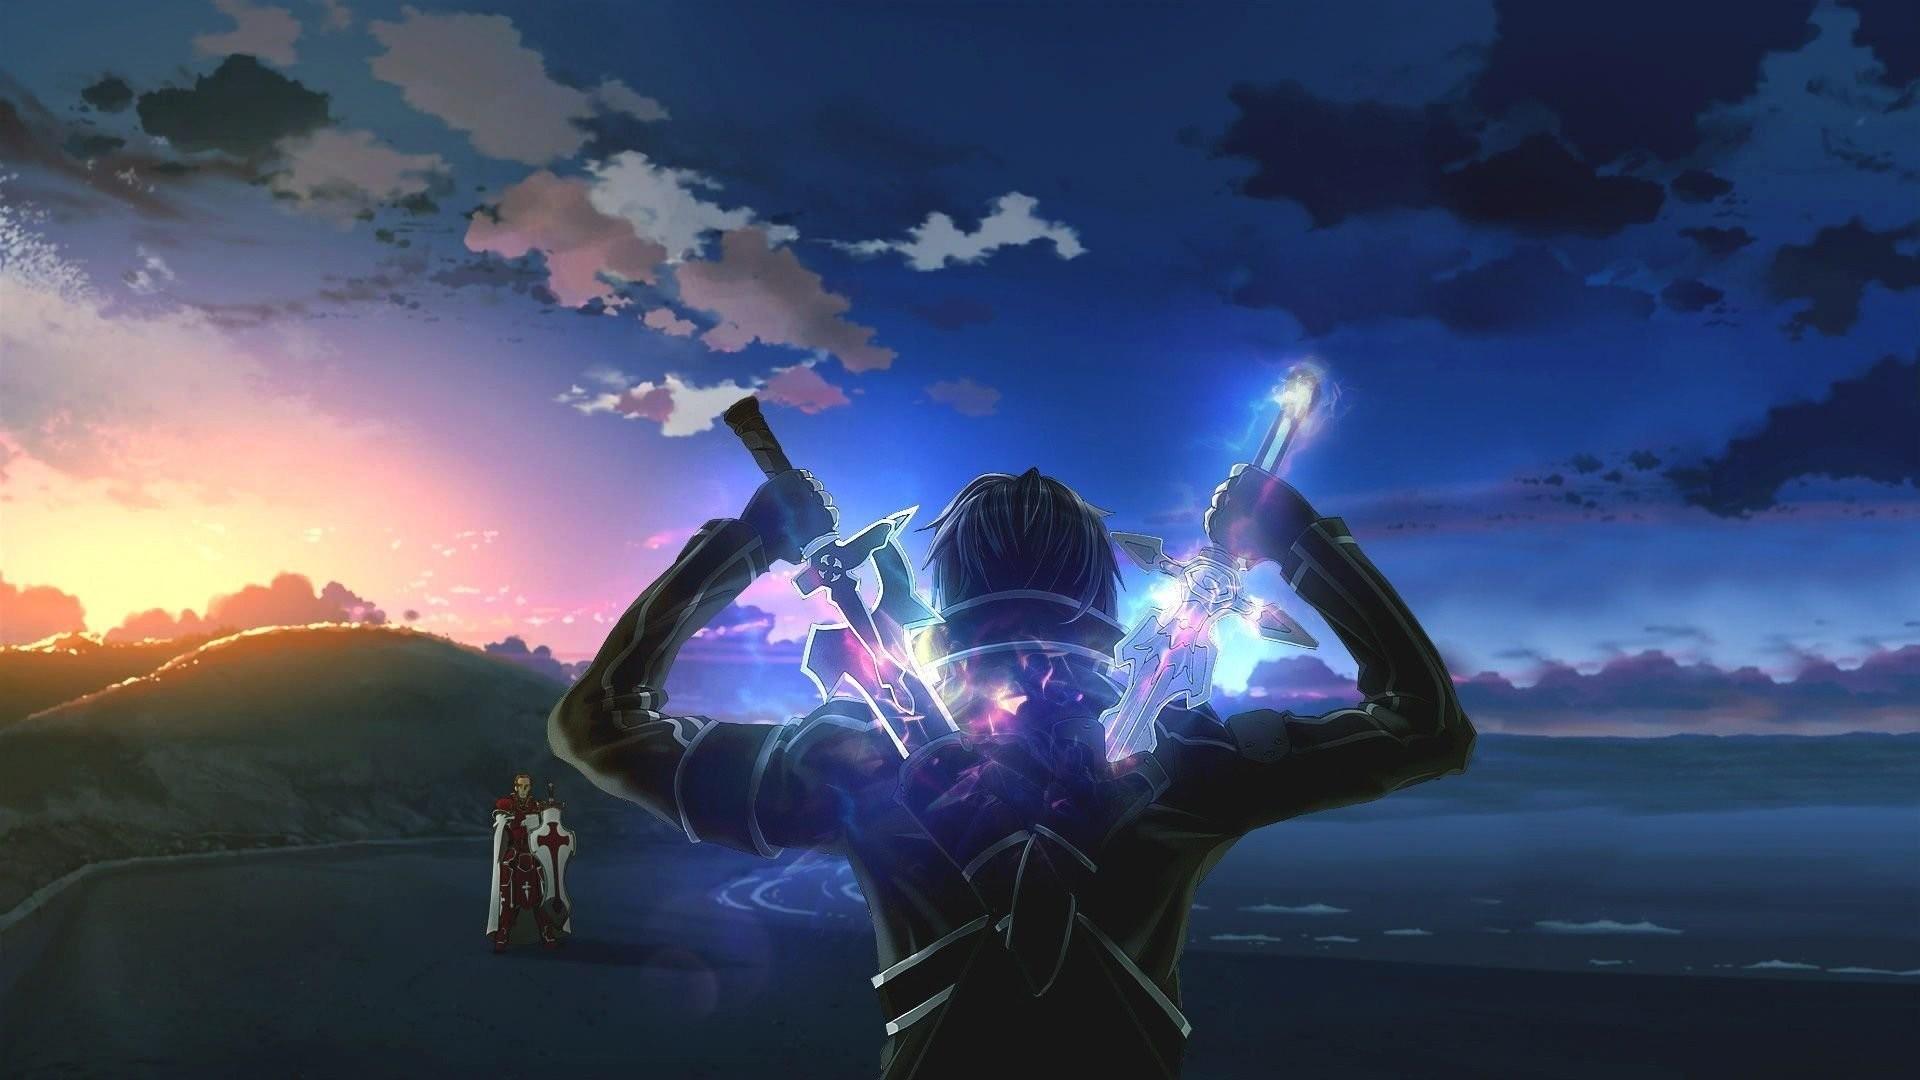 Chào đón những hình nền Sword Art Online đầy màu sắc và hoành tráng. Cùng tham gia vào một cuộc phiêu lưu đầy kịch tính bên Kirito và những nhân vật đáng yêu khác của Sword Art Online. Sẽ không có gì tuyệt vời hơn khi bạn có thể là một phần của thế giới ảo này!